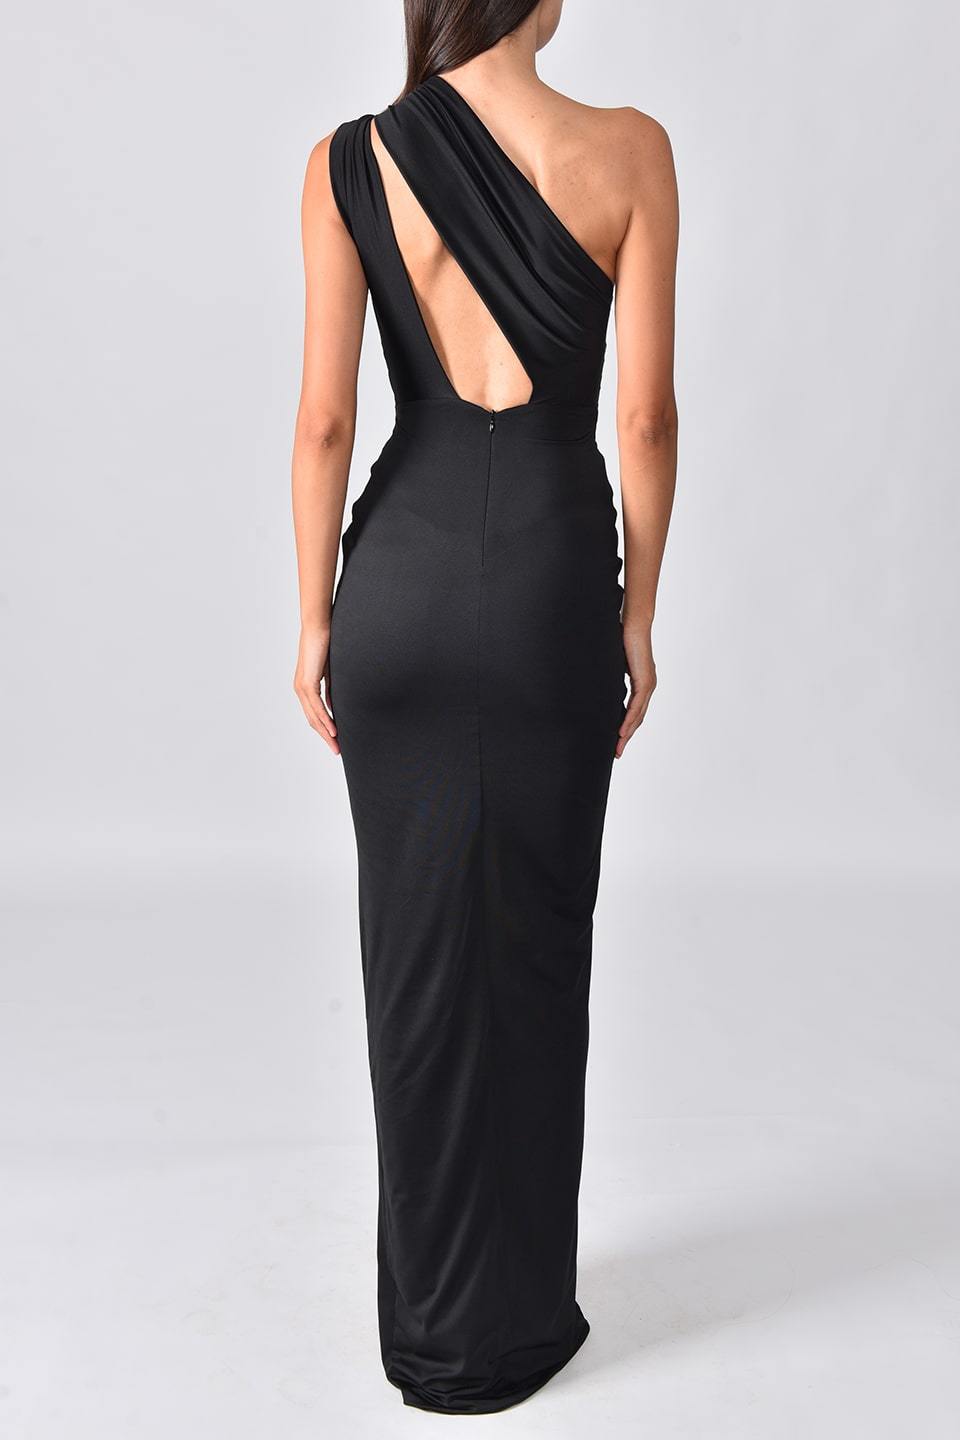 Model wearing black one shoulder dress with long side slit from Hamel fashion designer, posing from behind